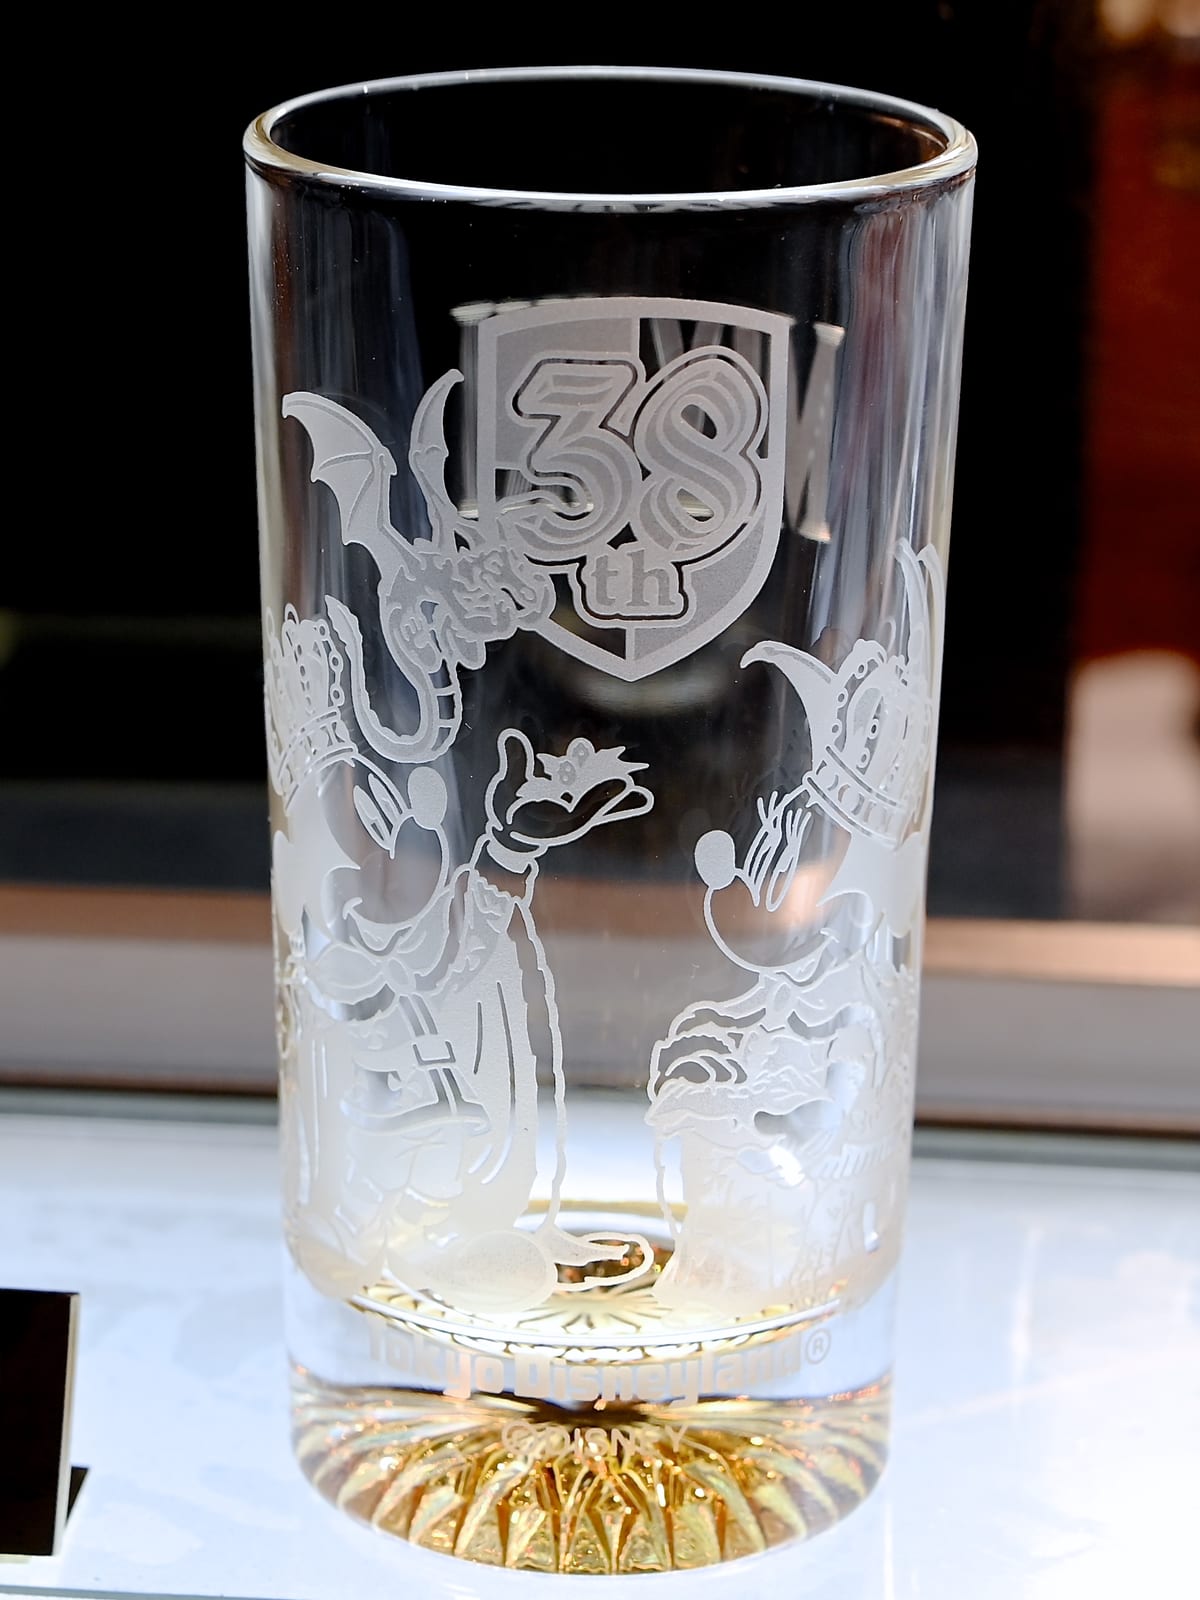 王様ミッキー ドラゴンデザイン 東京ディズニーランド38周年記念ガラスグッズ お土産